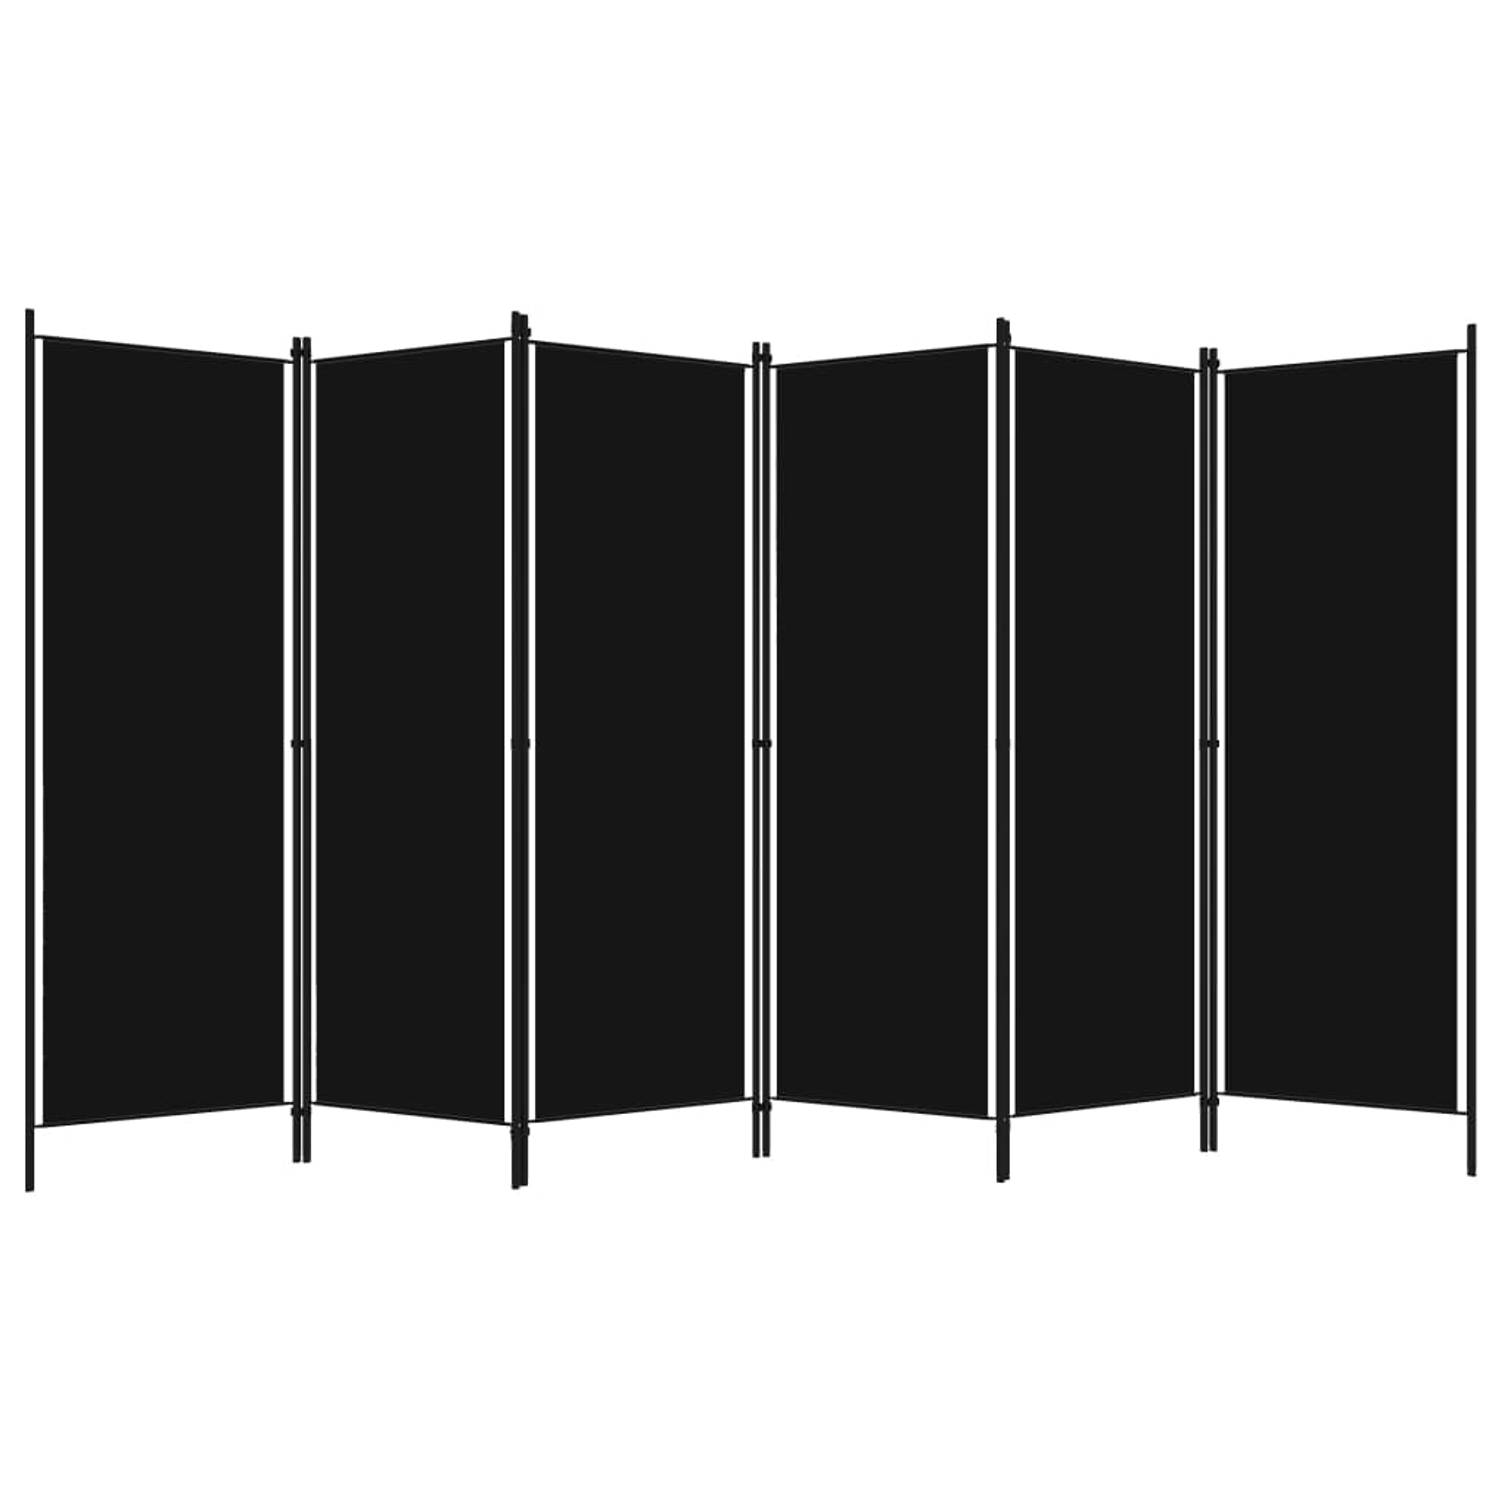 The Living Store Kamerscherm met 6 panelen 300x180 cm zwart - Kamerscherm